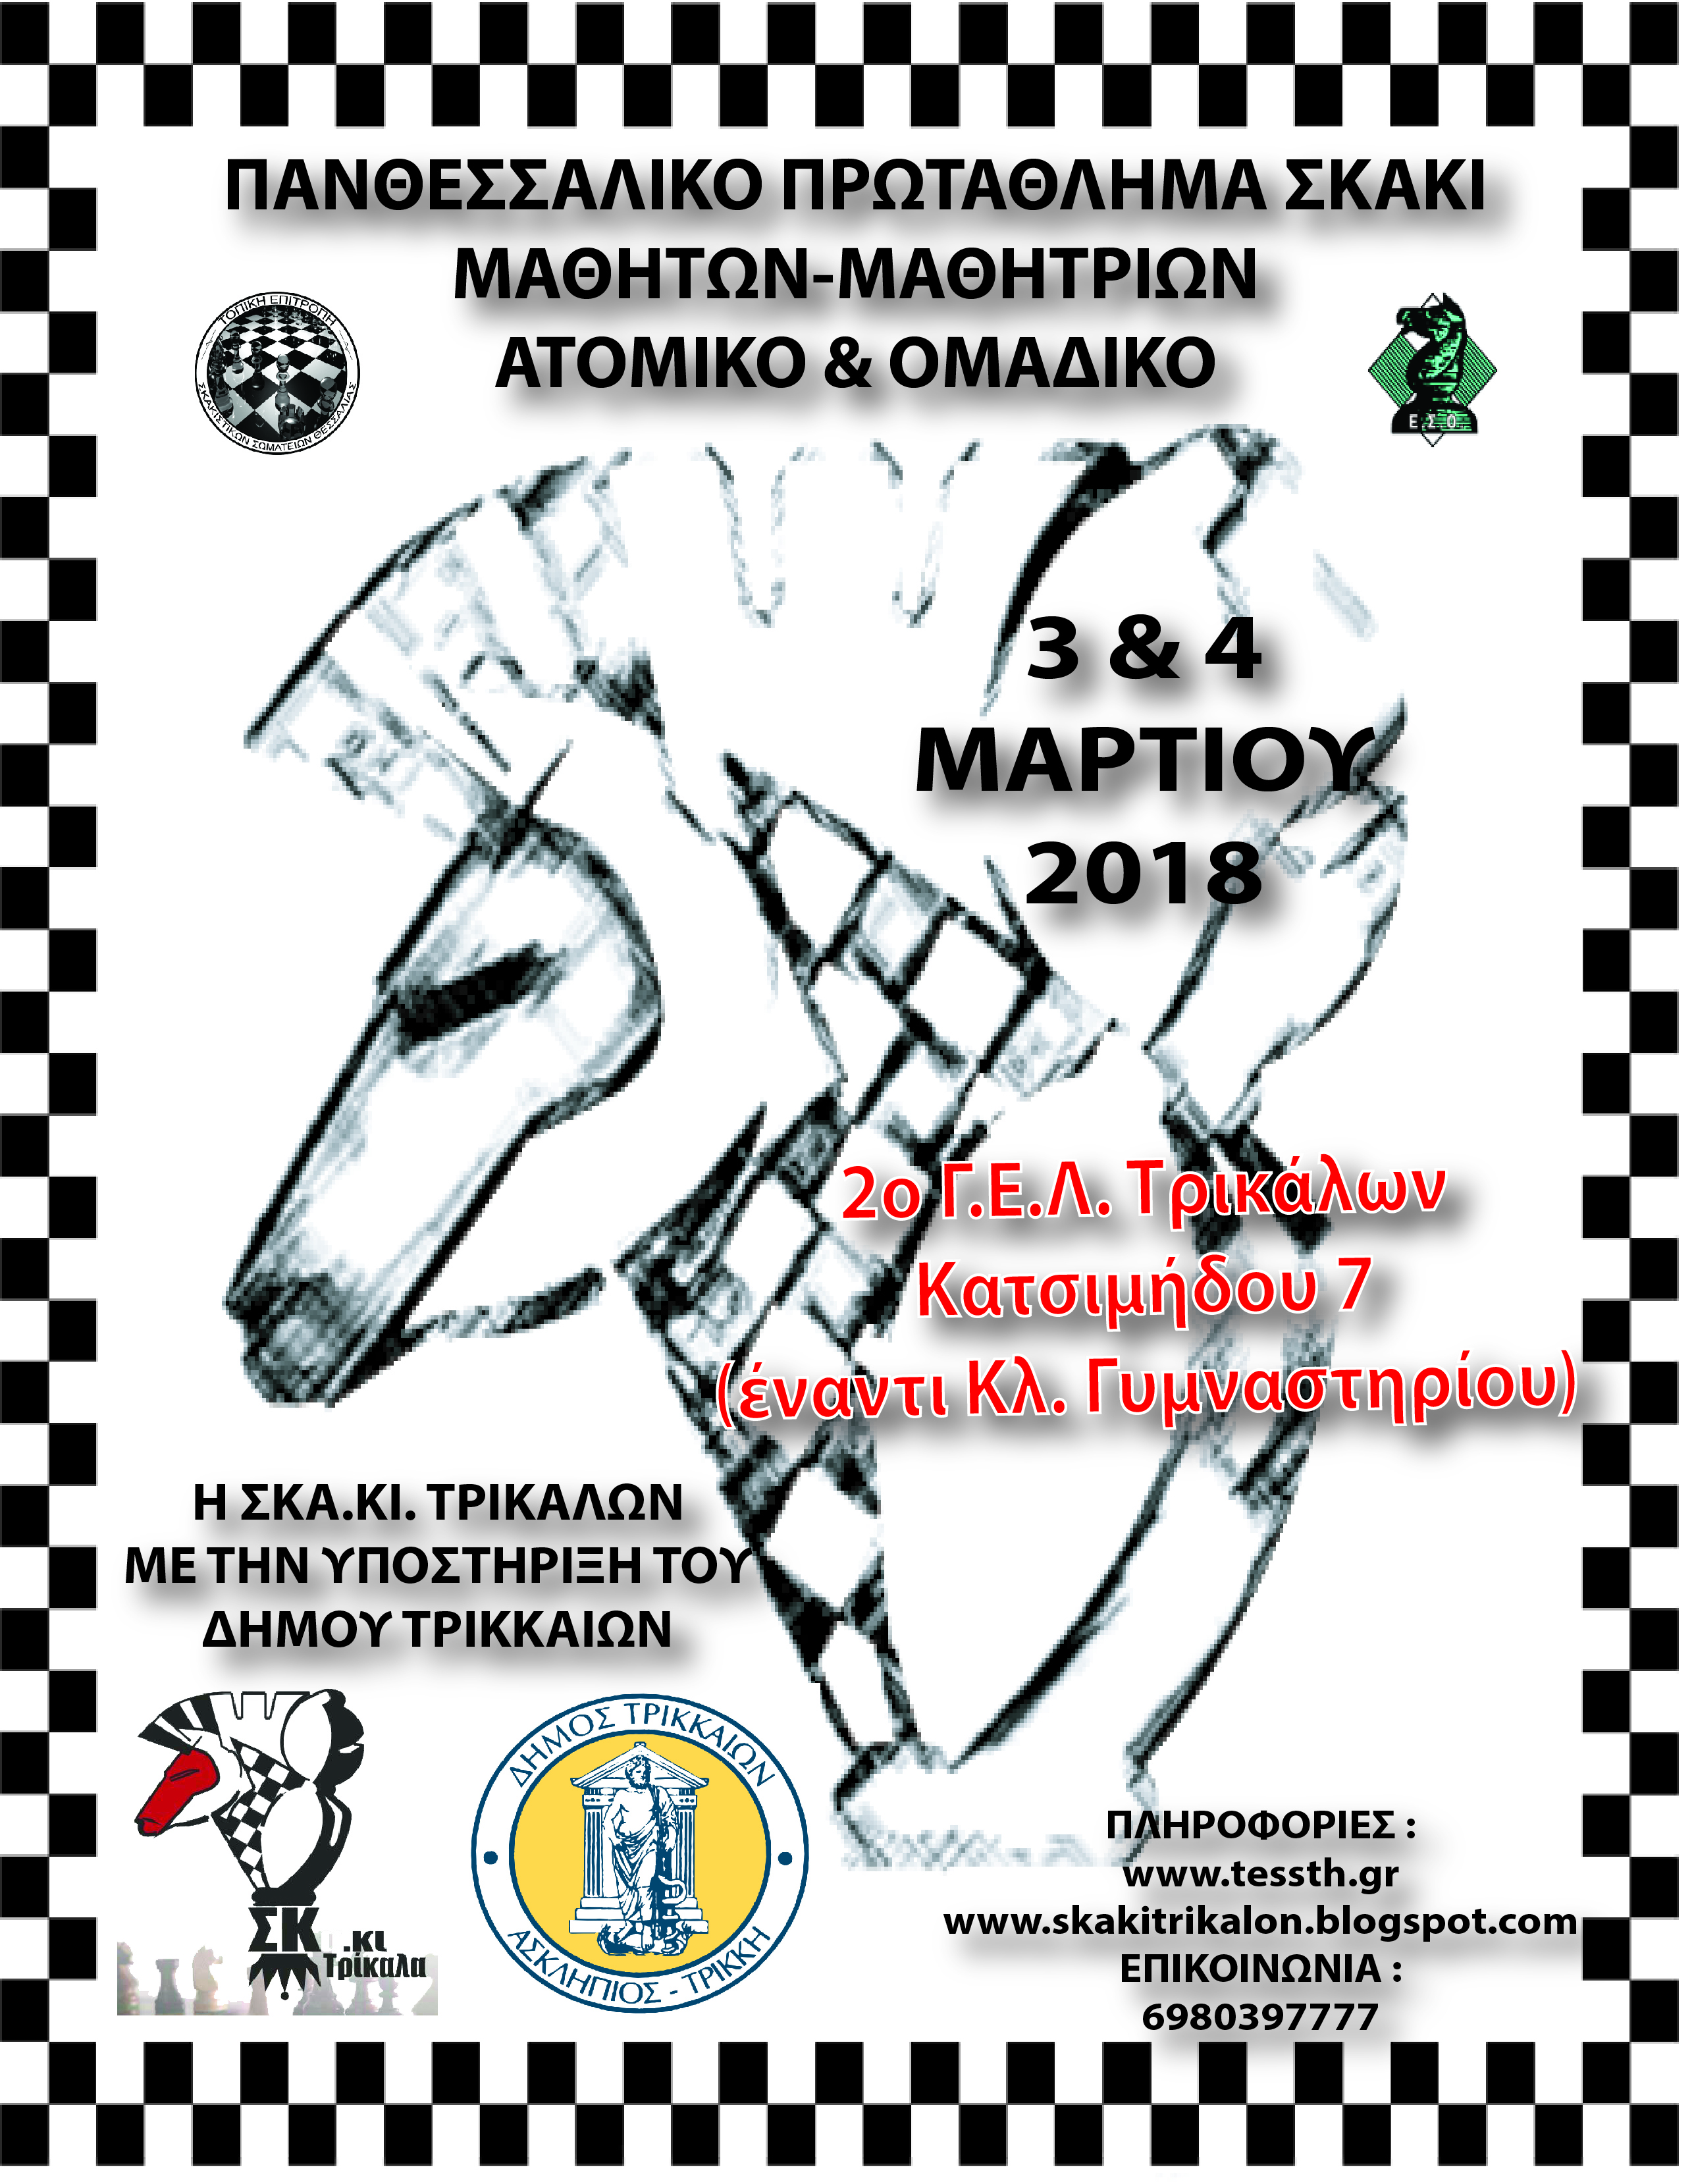 Σκακιστική γιορτή Θεσσαλών μαθητών στα Τρίκαλα